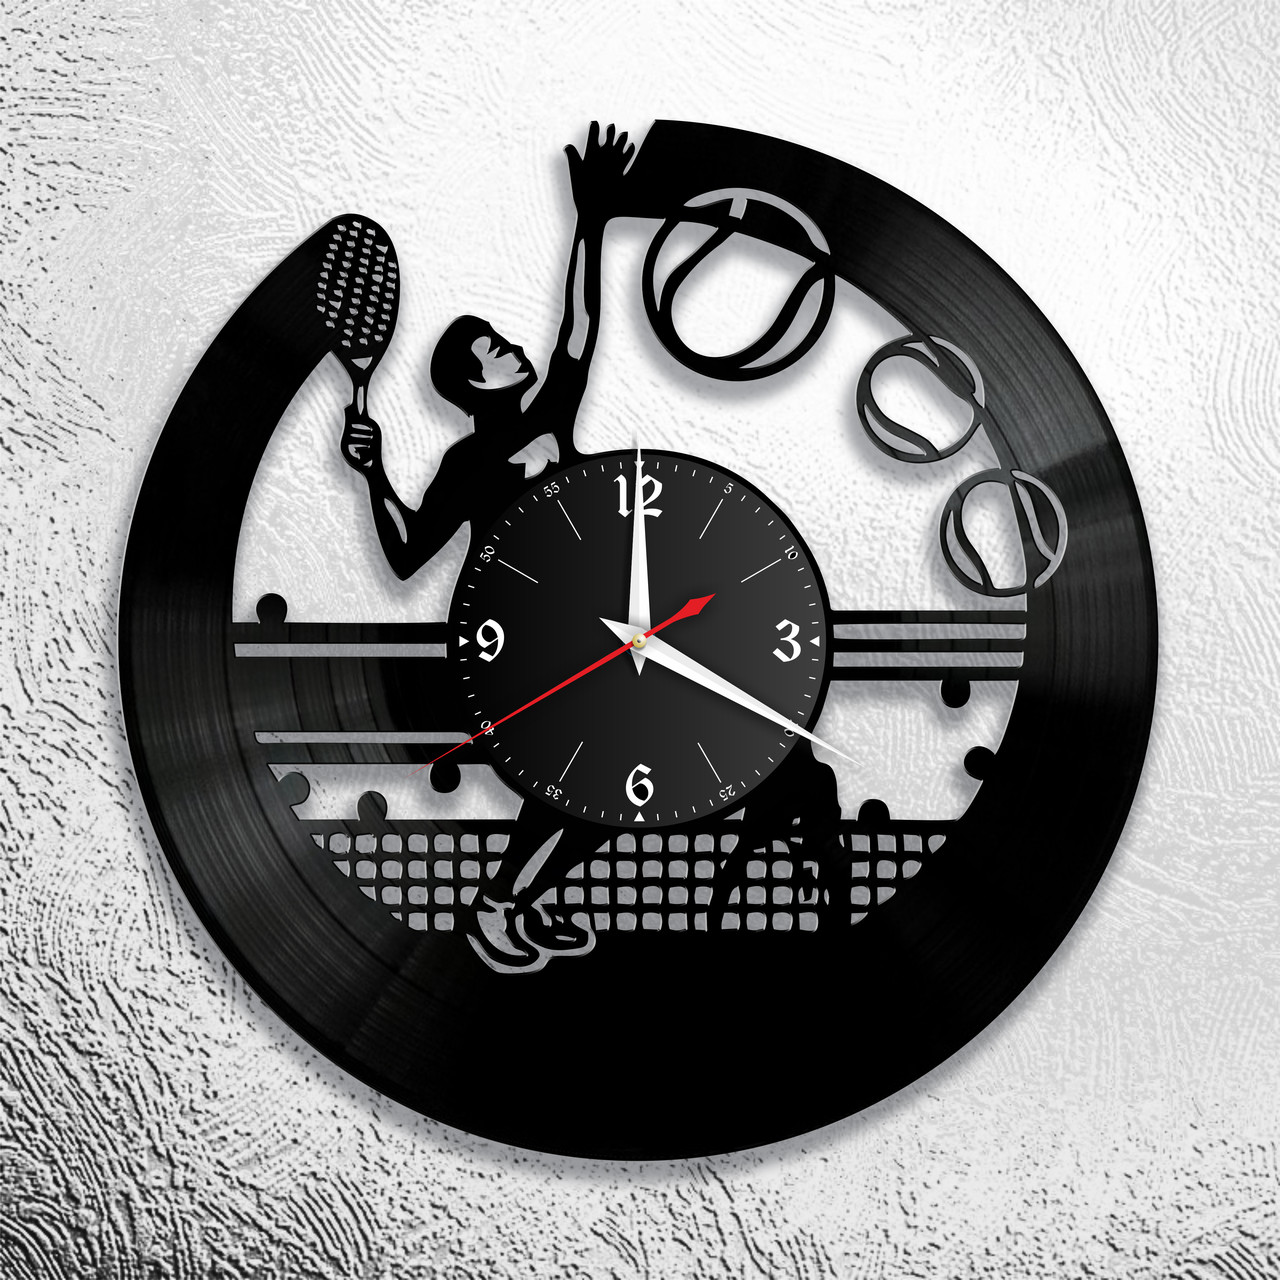 Оригинальные часы из виниловых пластинок  "Теннис" версия 1, фото 1